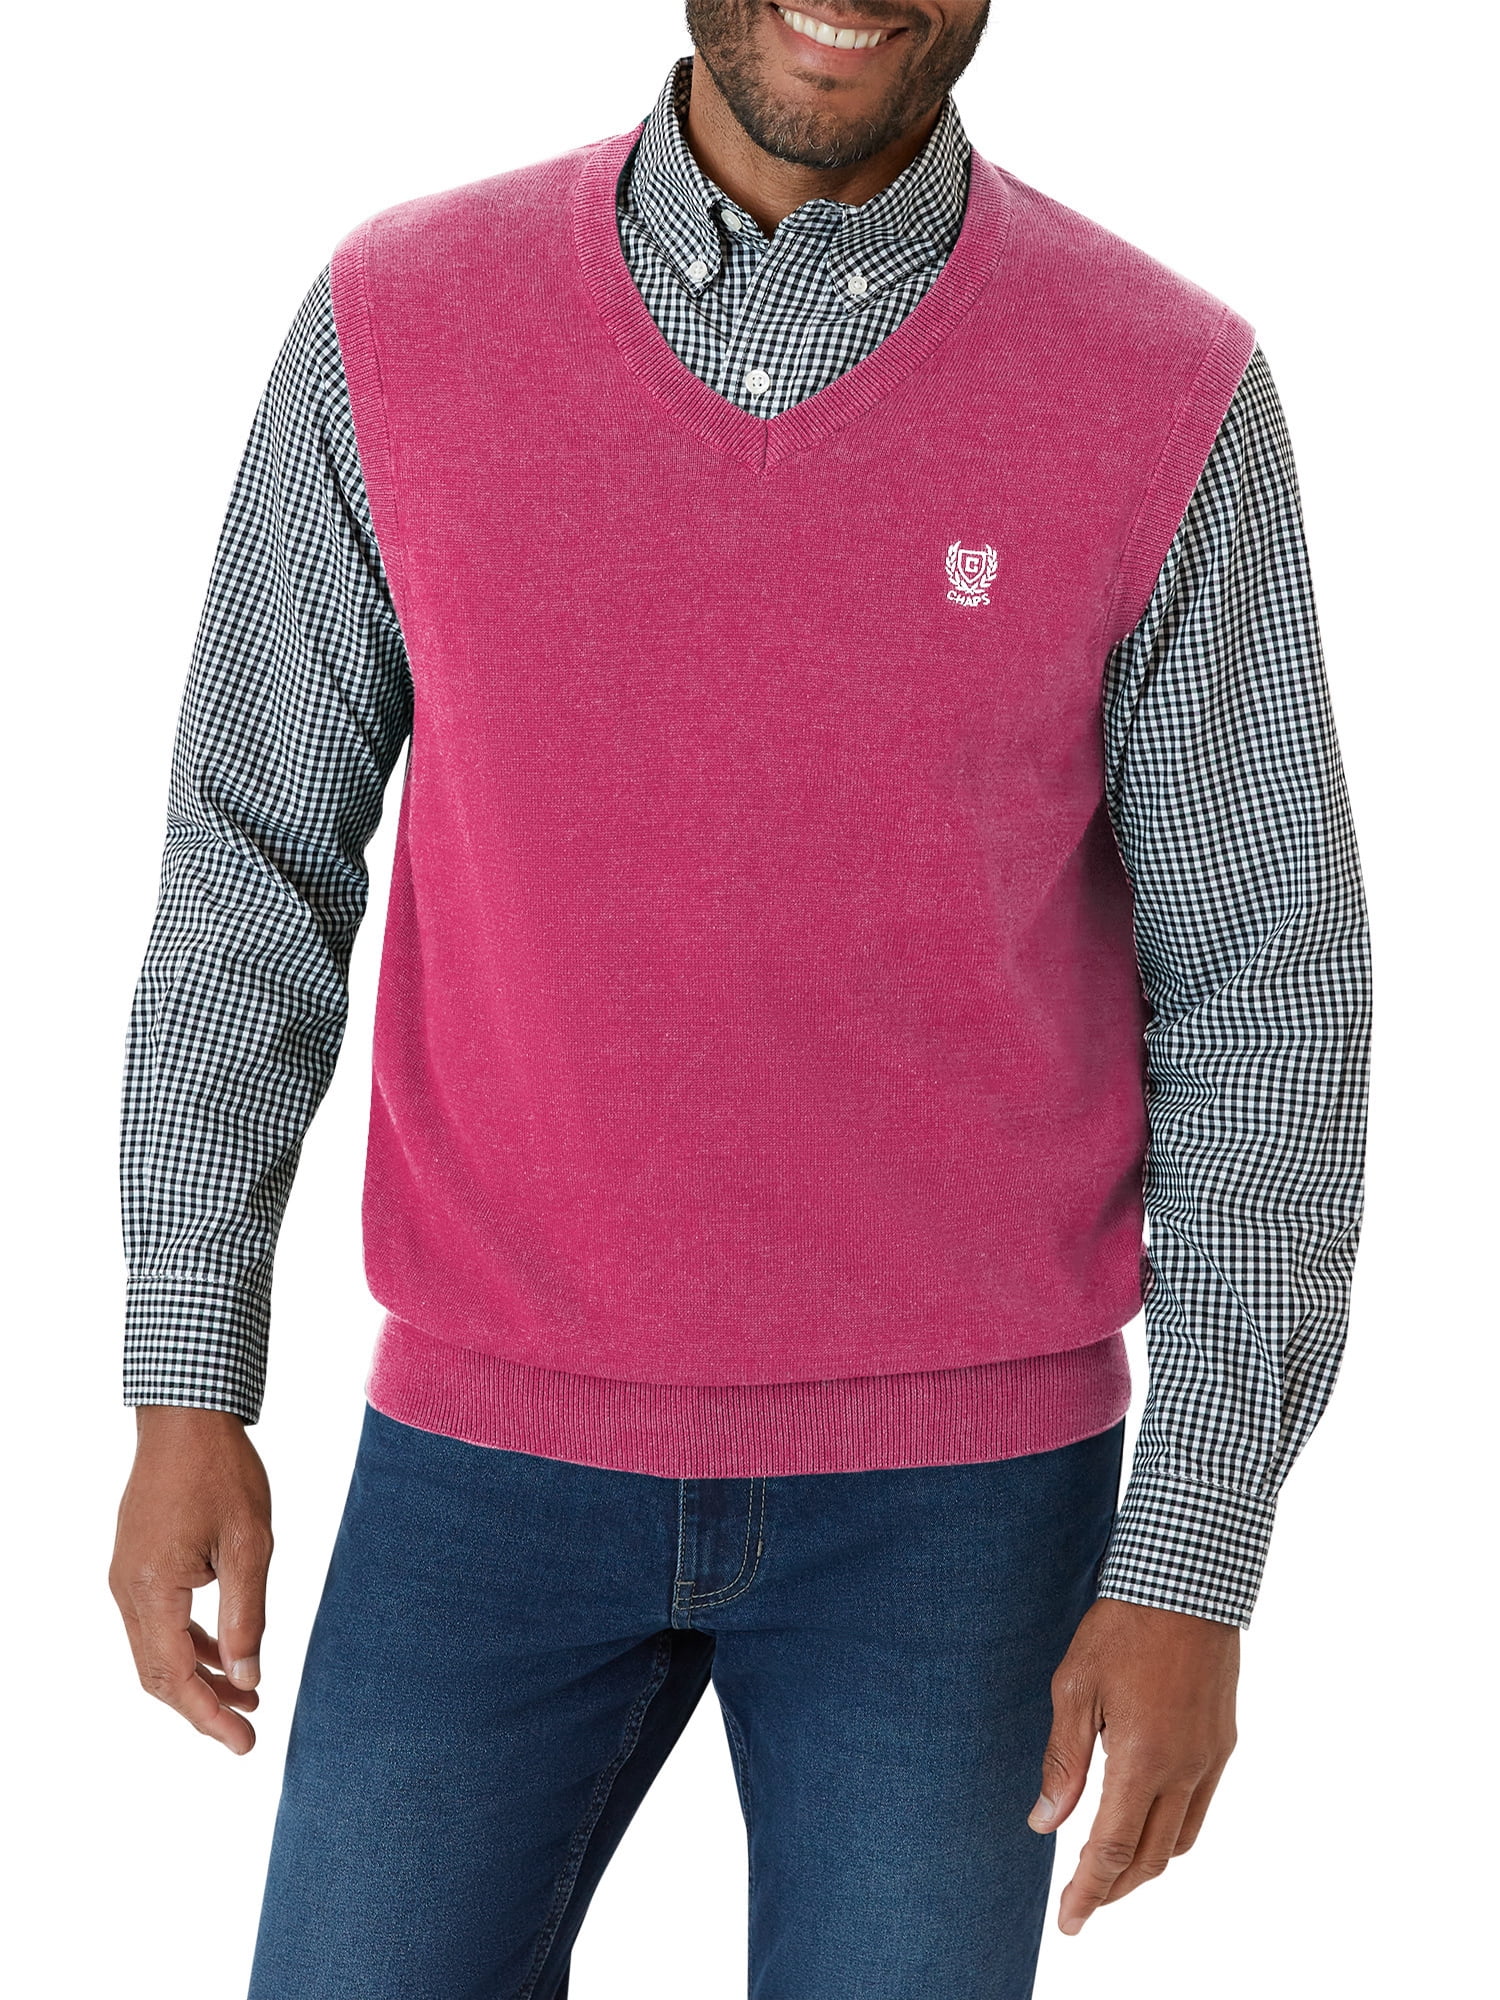 Schandalig Benadering Grafiek Chaps Men's Fine Gauge Cotton Sweater Vest- Sizes XS up to 2XL - Walmart.com